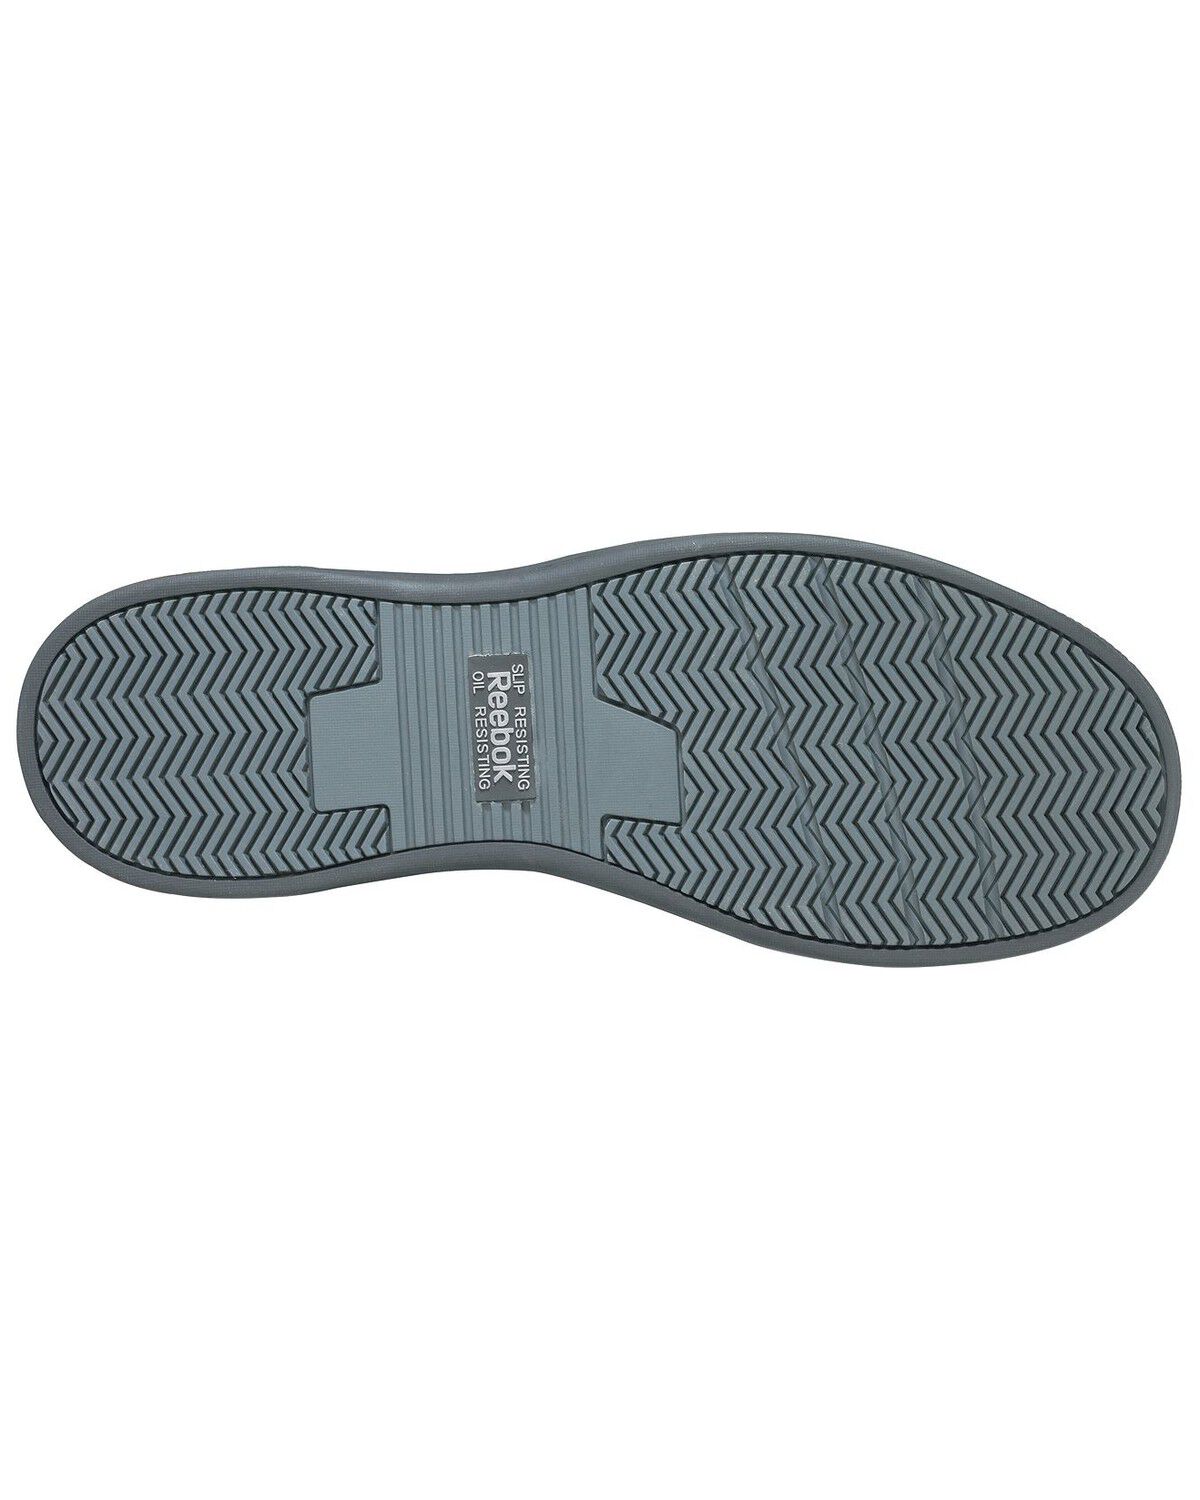 reebok composite toe skate shoe